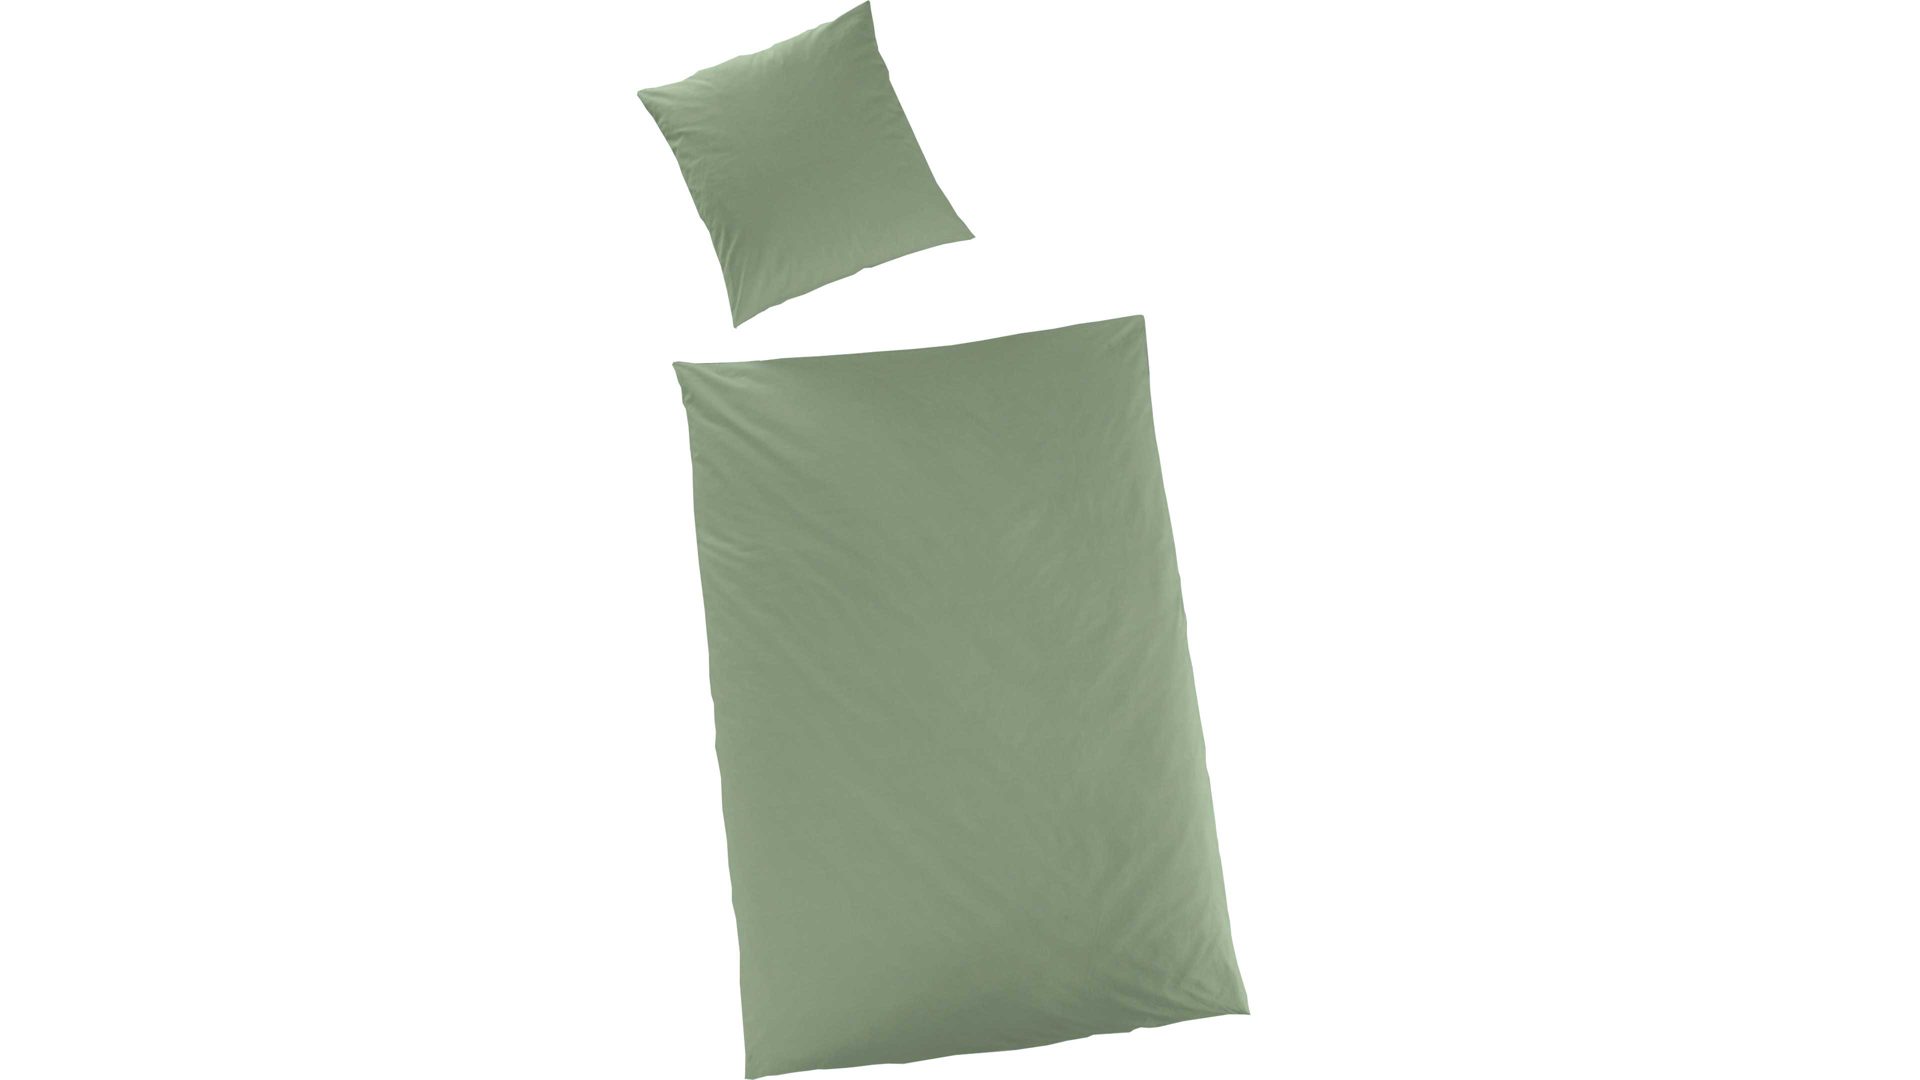 Bettwäsche-Set H.g. hahn haustextilien aus Stoff in Grün HAHN Luxus-Satin-Bettwäsche Sempre khakifarbener Baumwollsatin – zweiteilig, ca. 155 x 200 cm